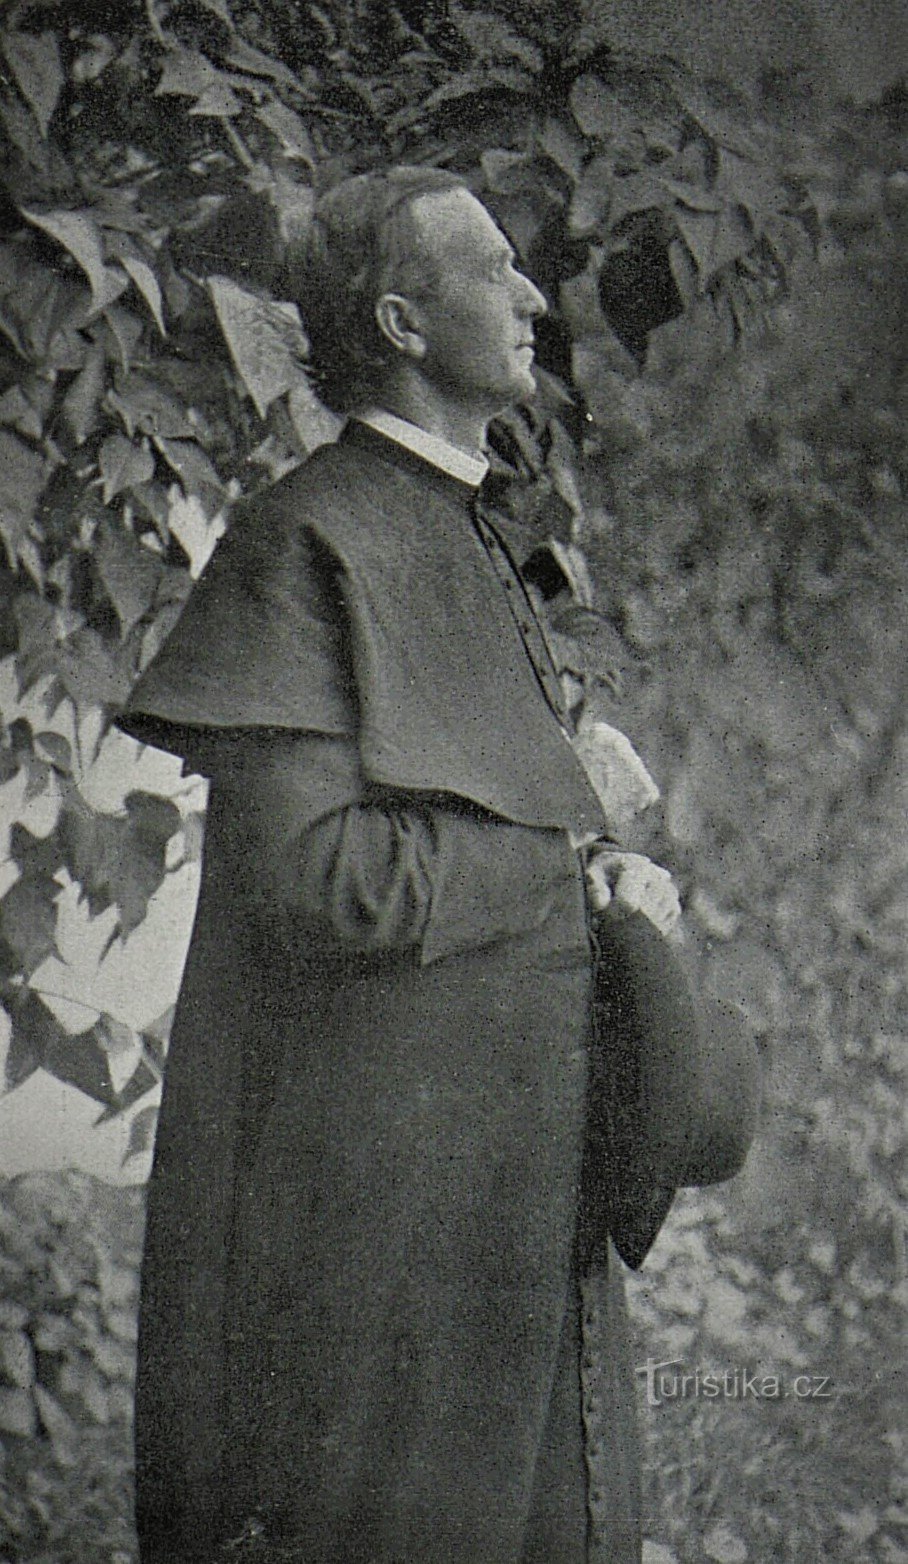 P. Andrej Hlinka (before 1907)